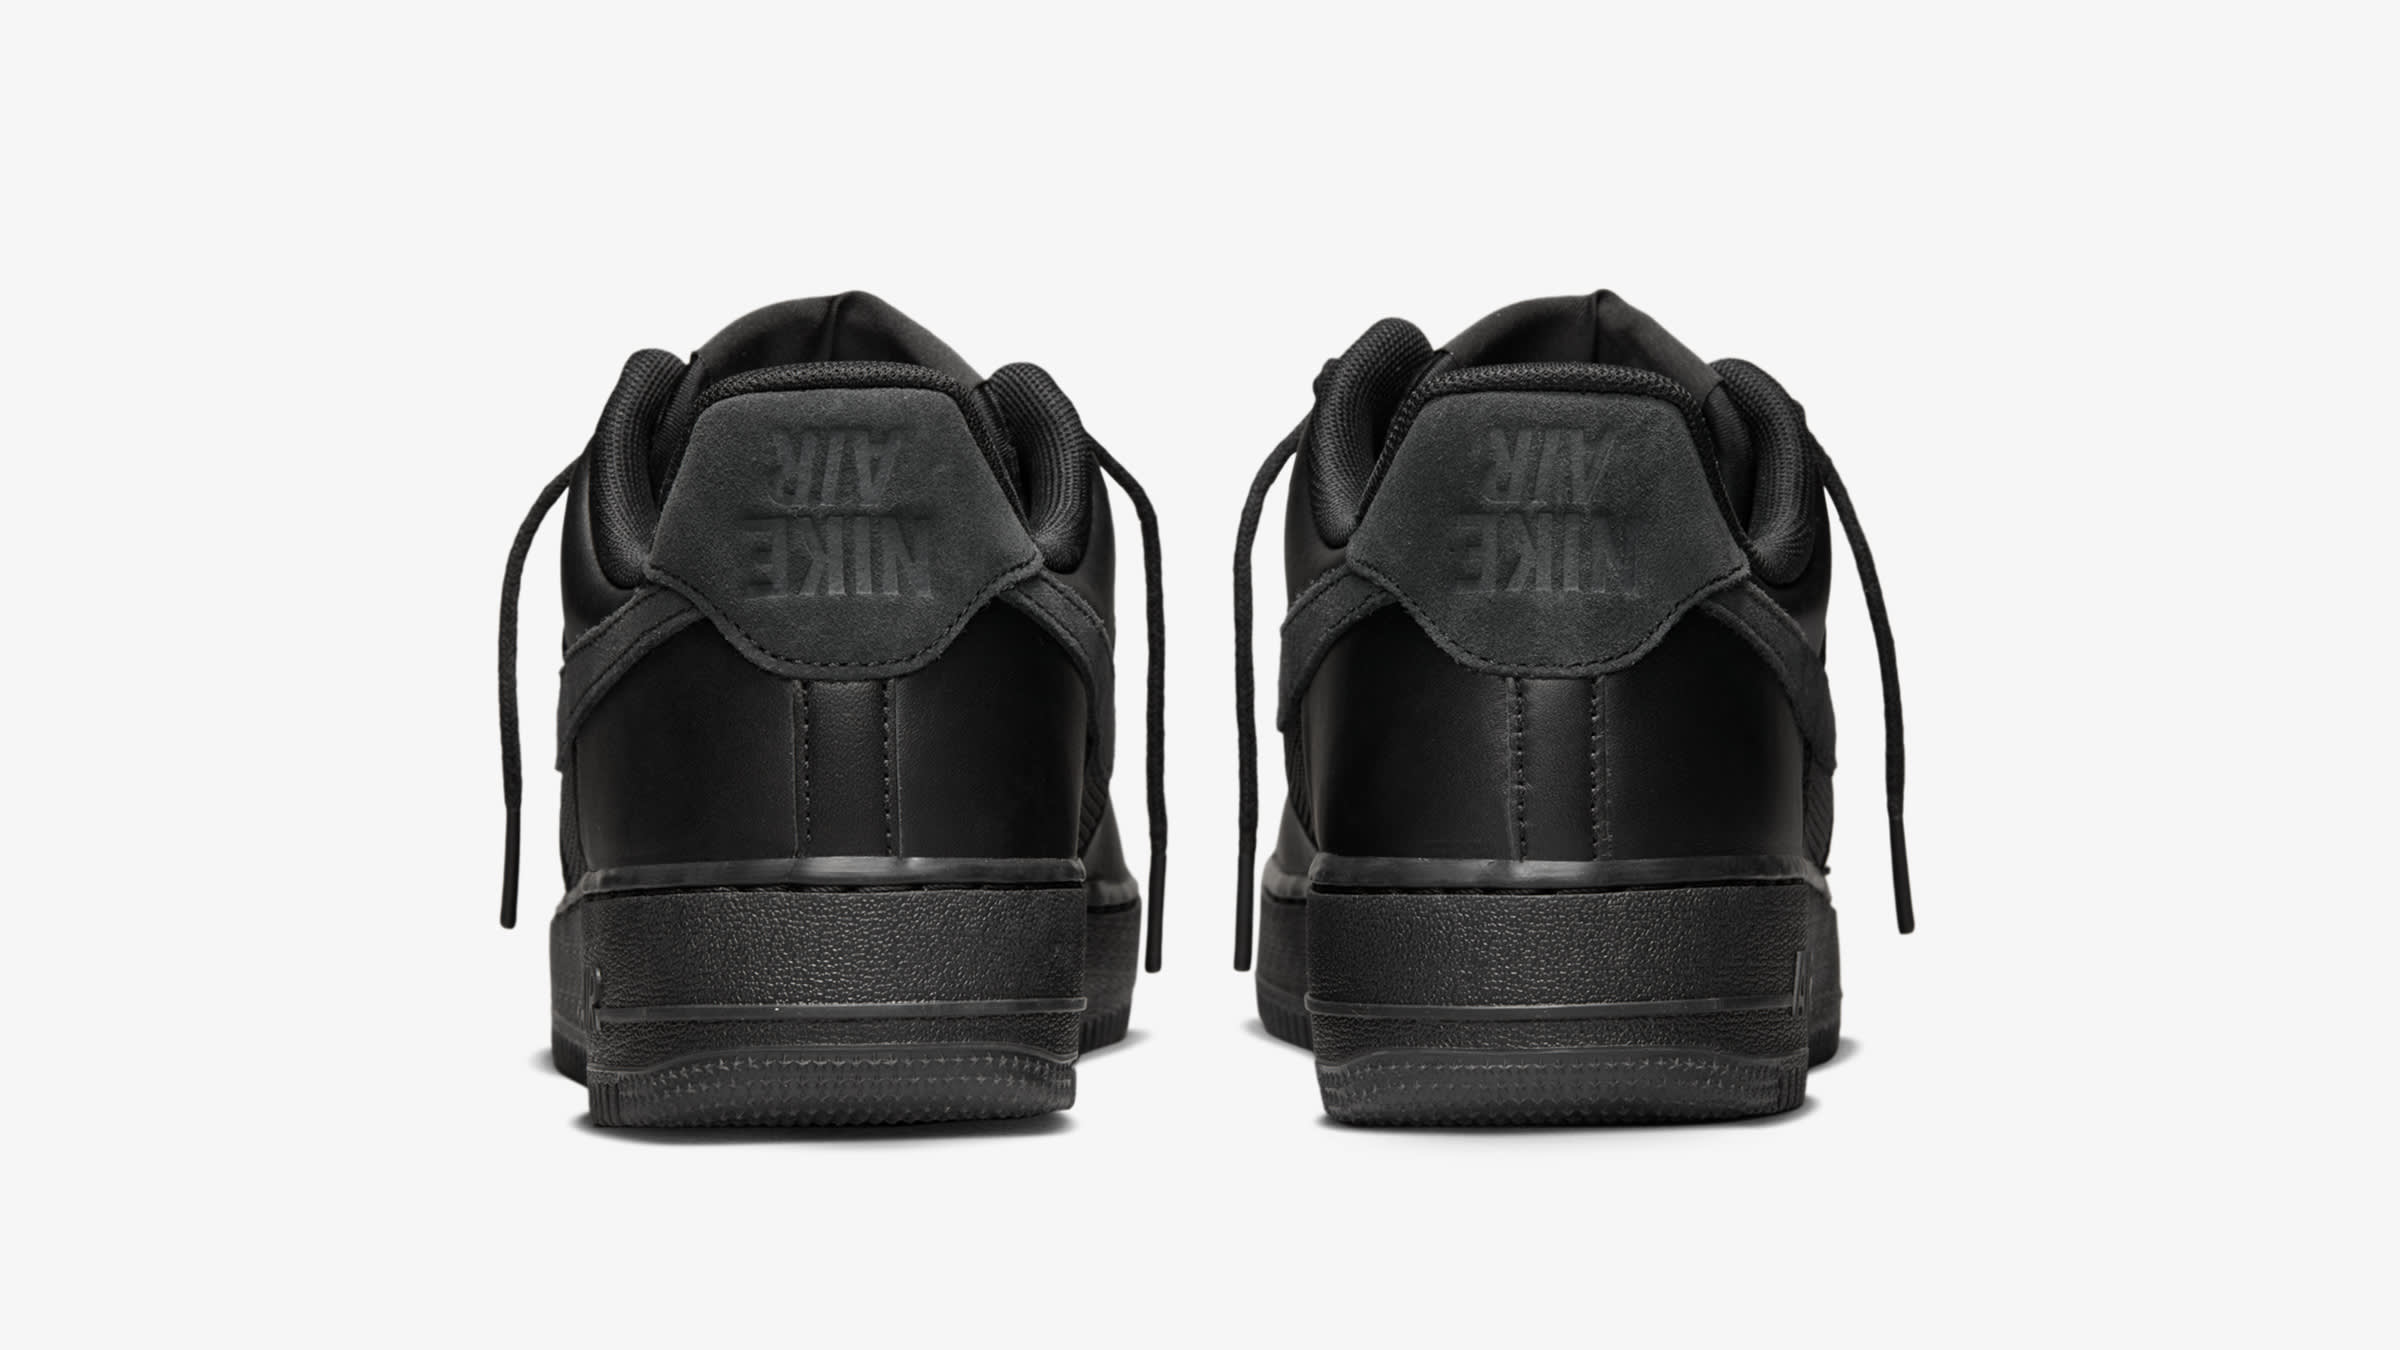 Nike x Slam Jam Air Force 1 Low Sp (Black & Off Noir) | END. Launches